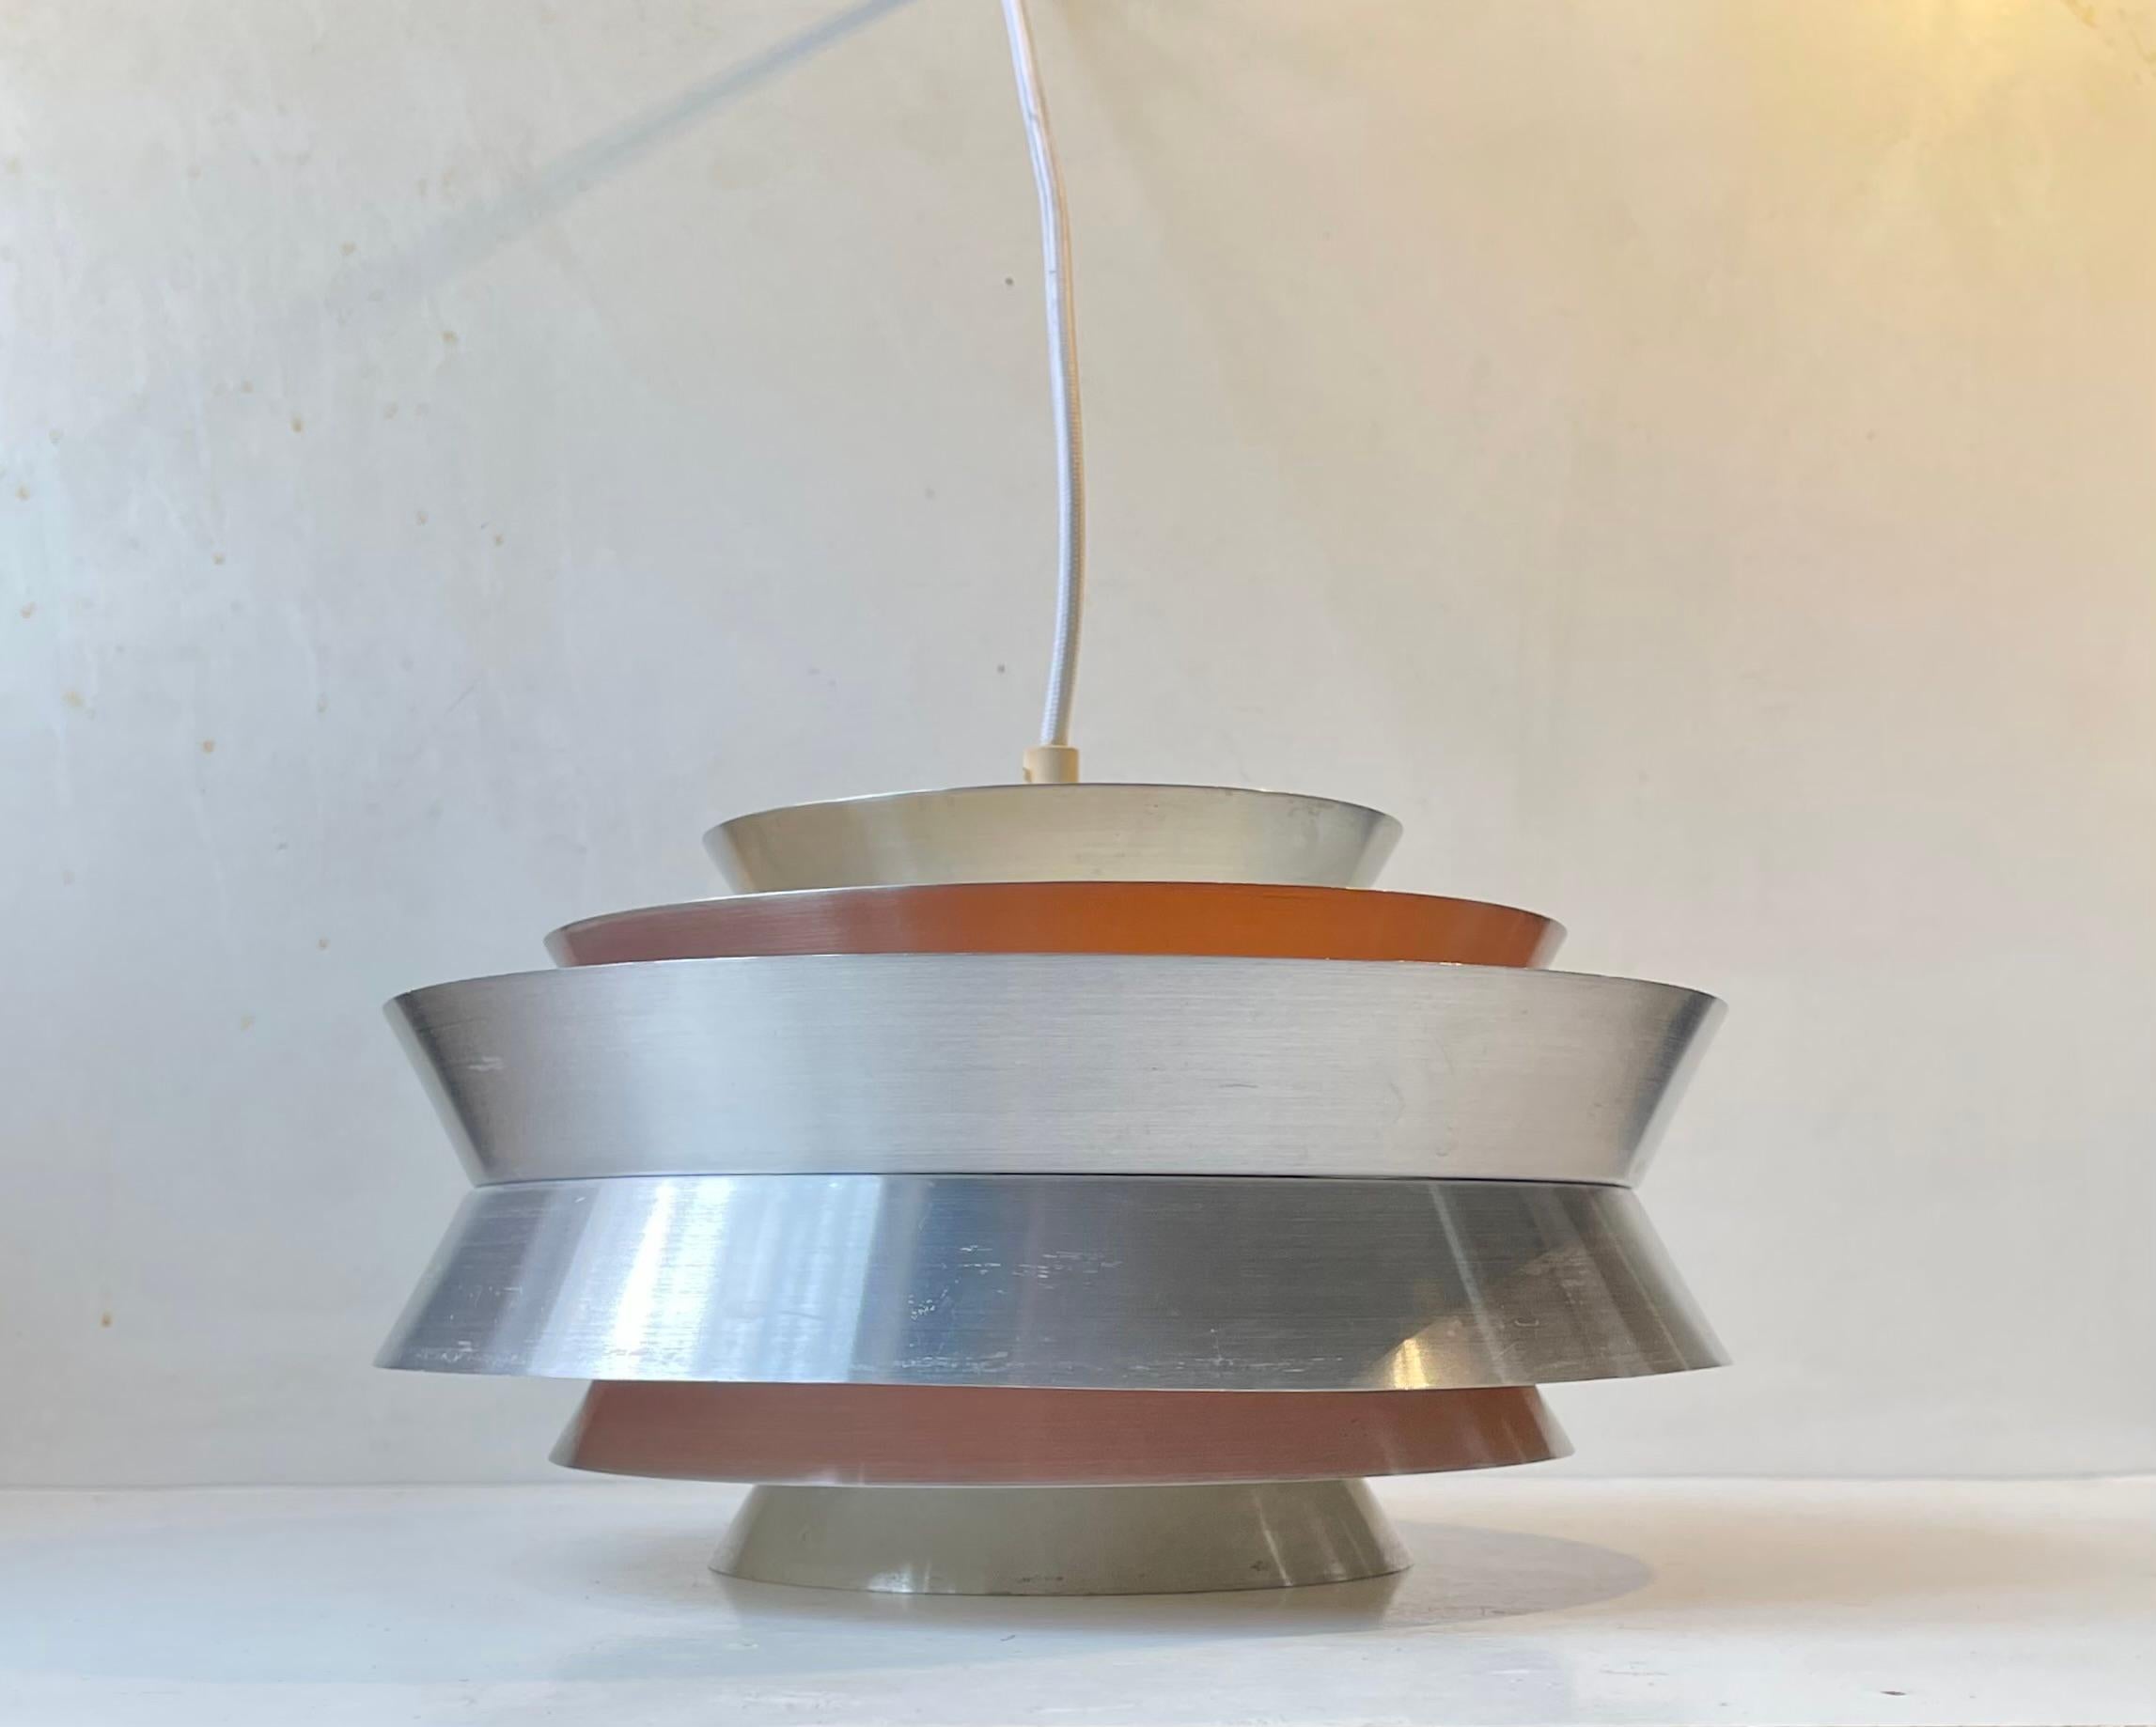 Lampe pendante en aluminium brossé appelée Trava. Conçu par Carl Thore alias Sigurd Lindquist. Fabriqué à Granhaga Metal Industri en Suède à la fin des années 1960. Il s'agit d'une construction à plusieurs niveaux et à plusieurs teintes, avec